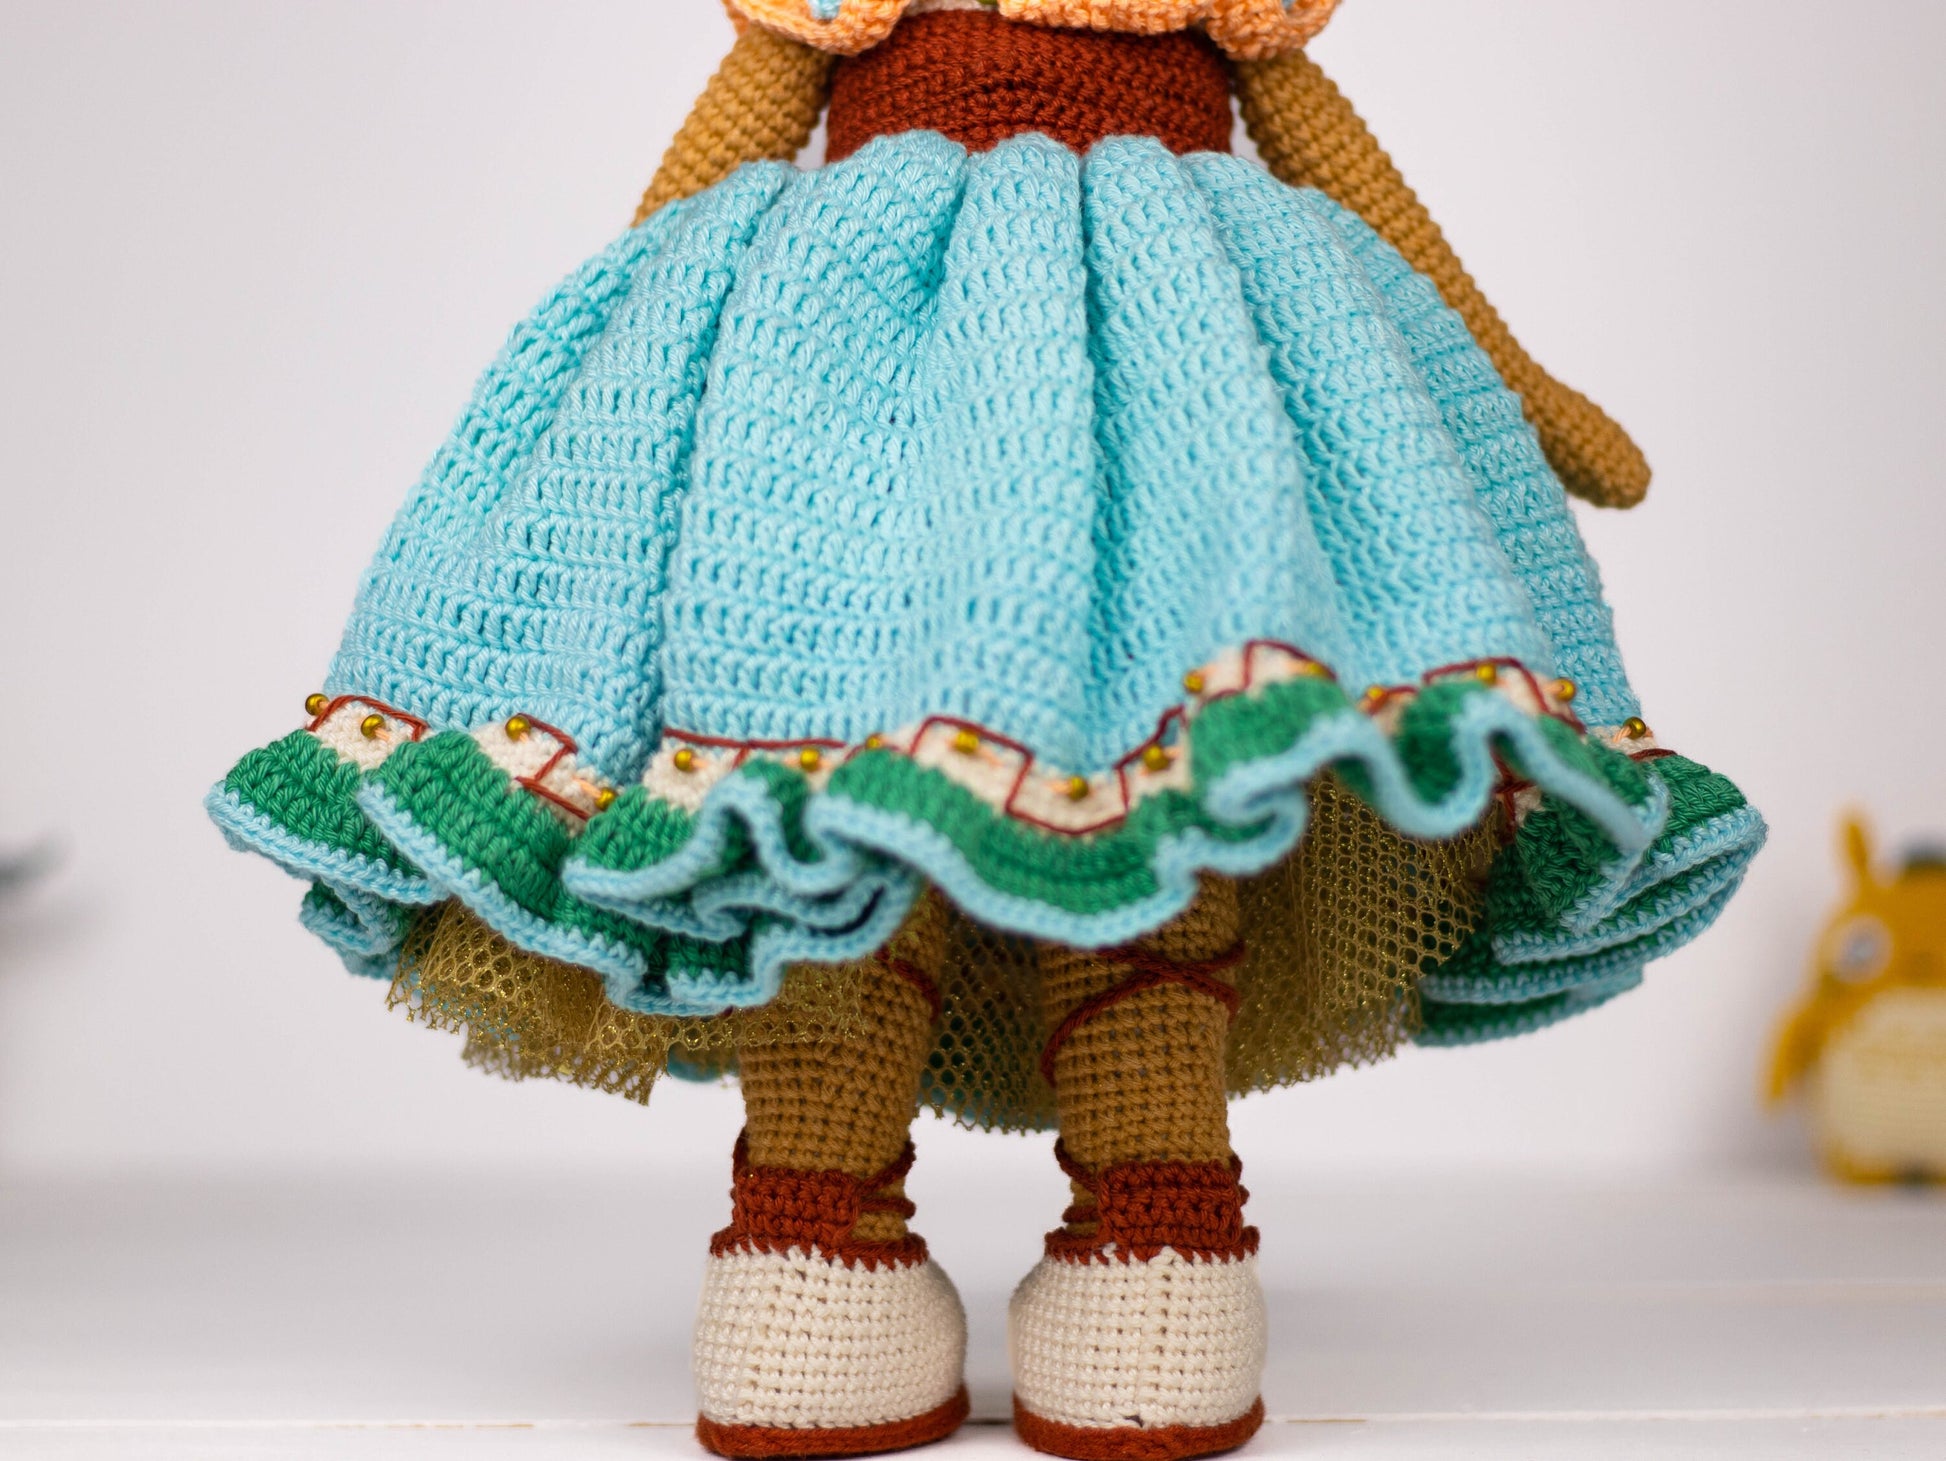 Africa America Doll, Black Crochet Doll, Crochet Amigurumi, Africa America Crochet Doll, Knitted Doll, Granddaughter Gift